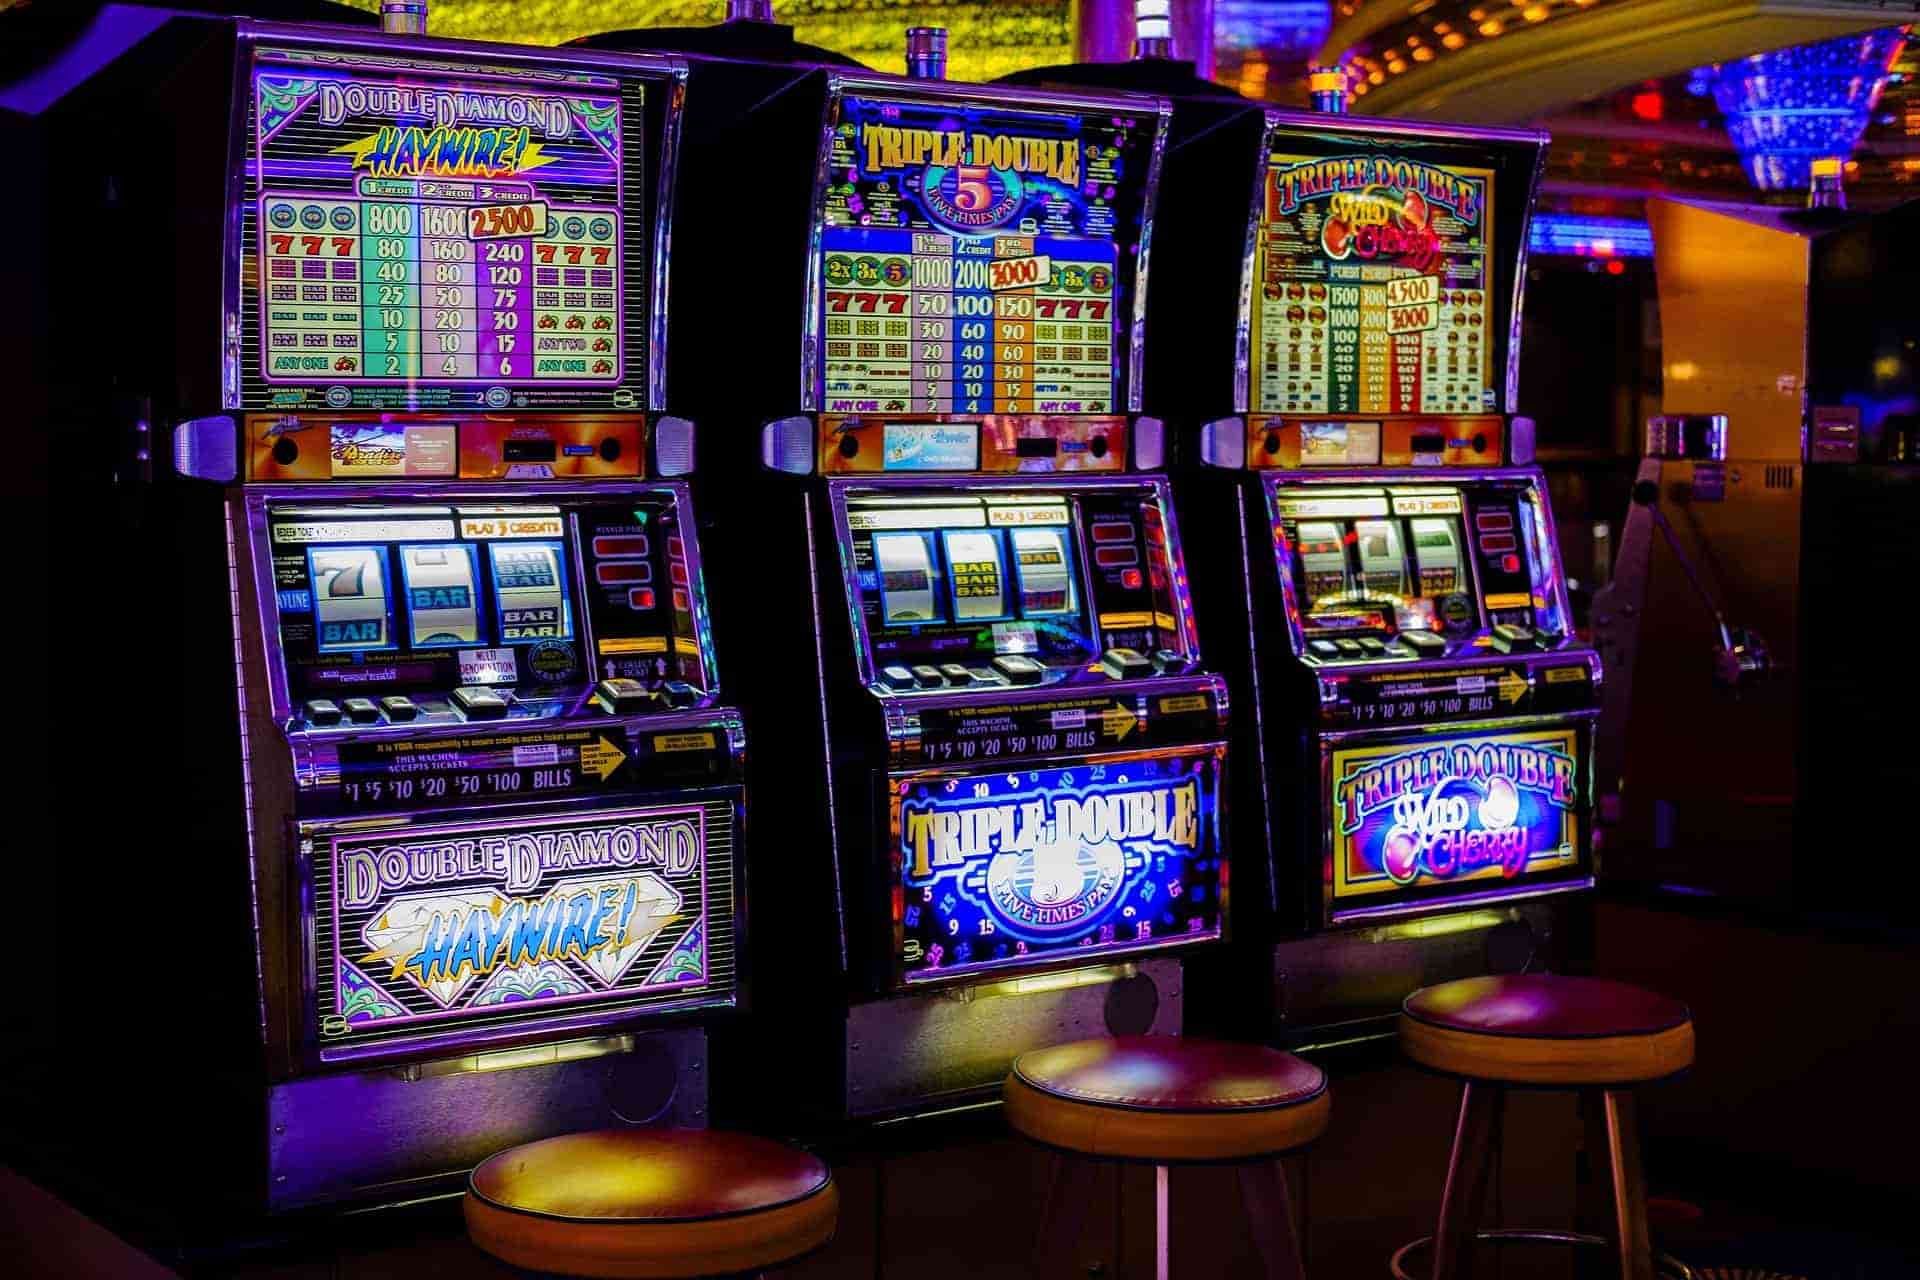 Sistemas de pago en casinos de tragamonedas